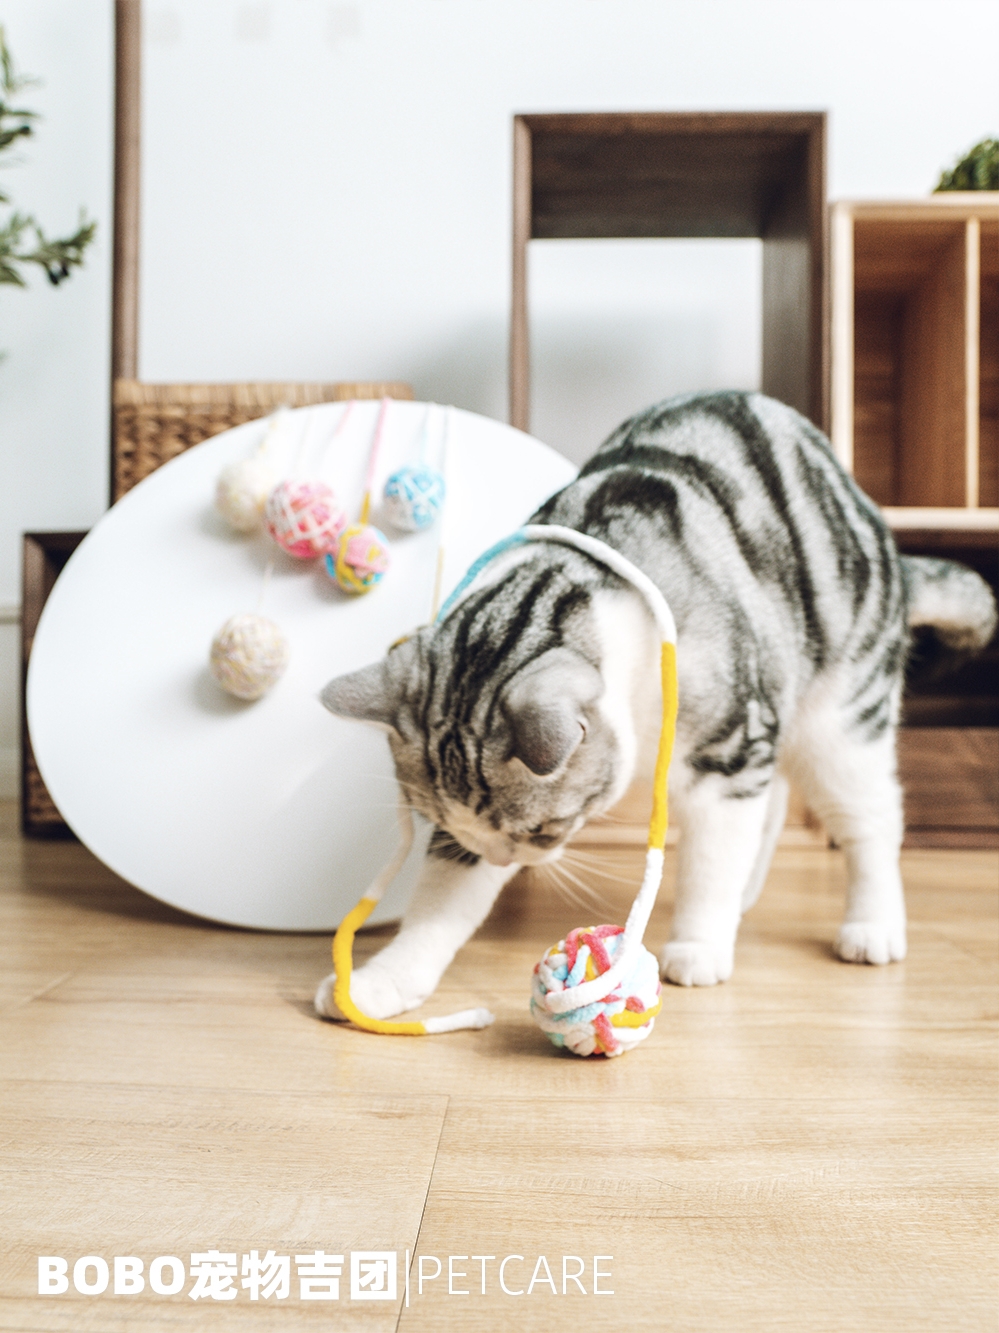 日本多格漫寵物貓玩具球 鈴鐺球逗貓器 逗貓棒 貓抓板 貓咪毛線球玩具 彩虹色 (8.3折)